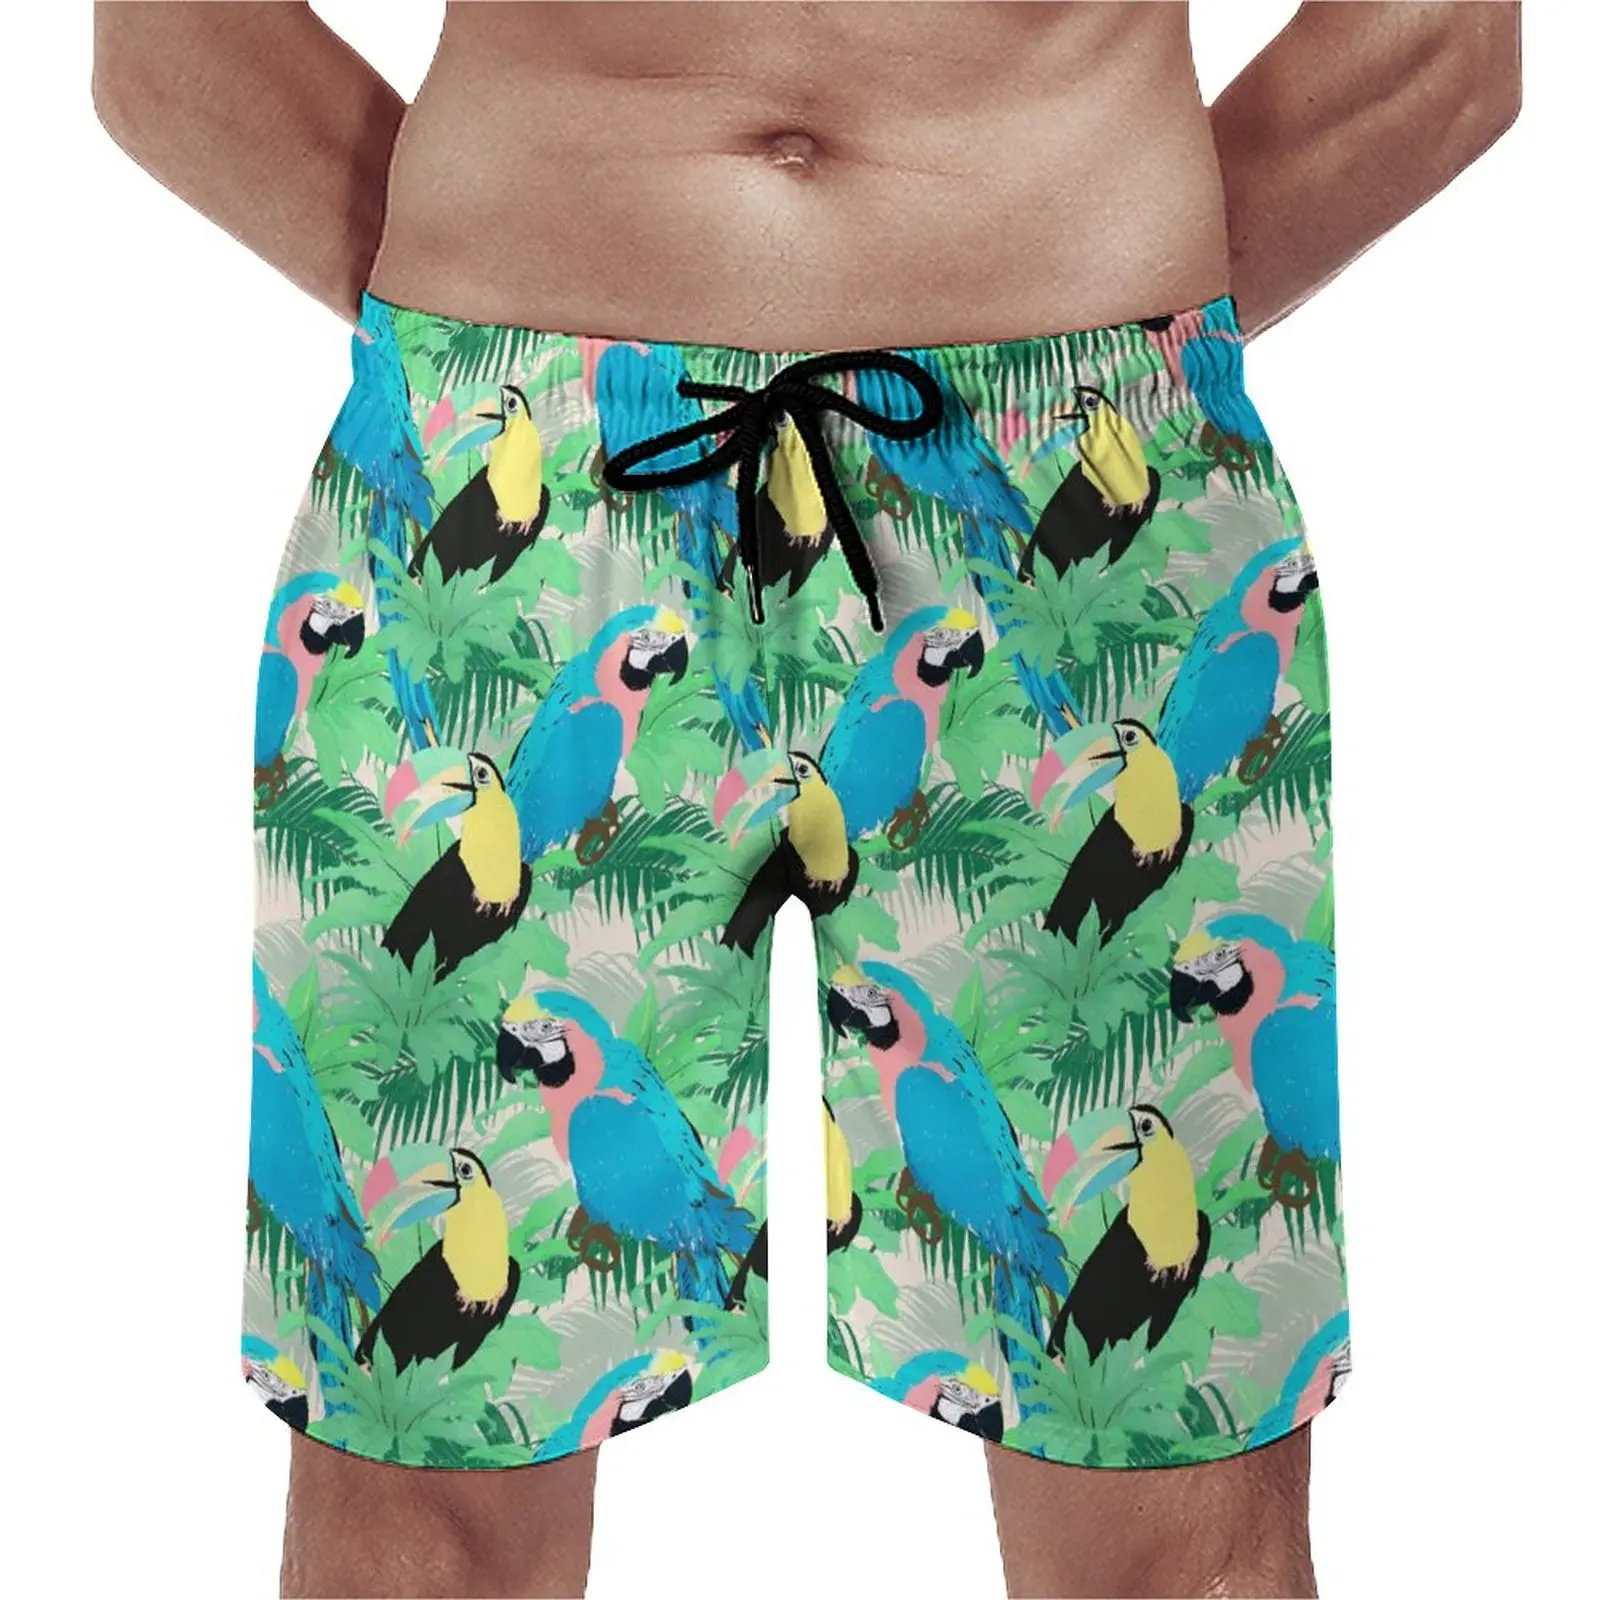 

Шорты с тропическими птицами, забавные пляжные короткие штаны с принтом зеленых листьев, удобные спортивные плавки с графическим принтом, на лето